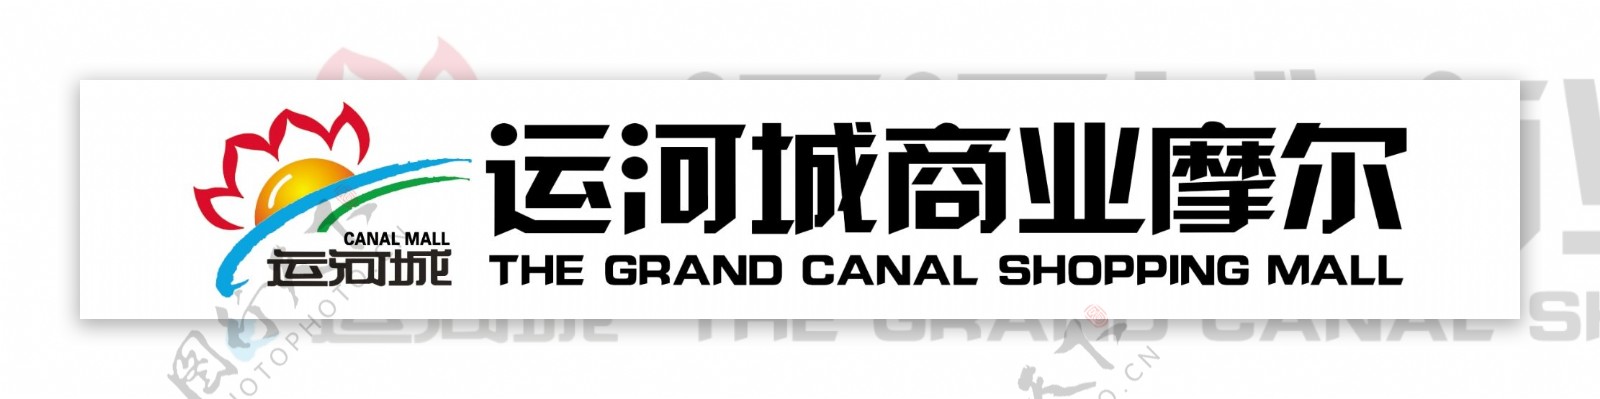 济宁运河城商业摩尔logo图片